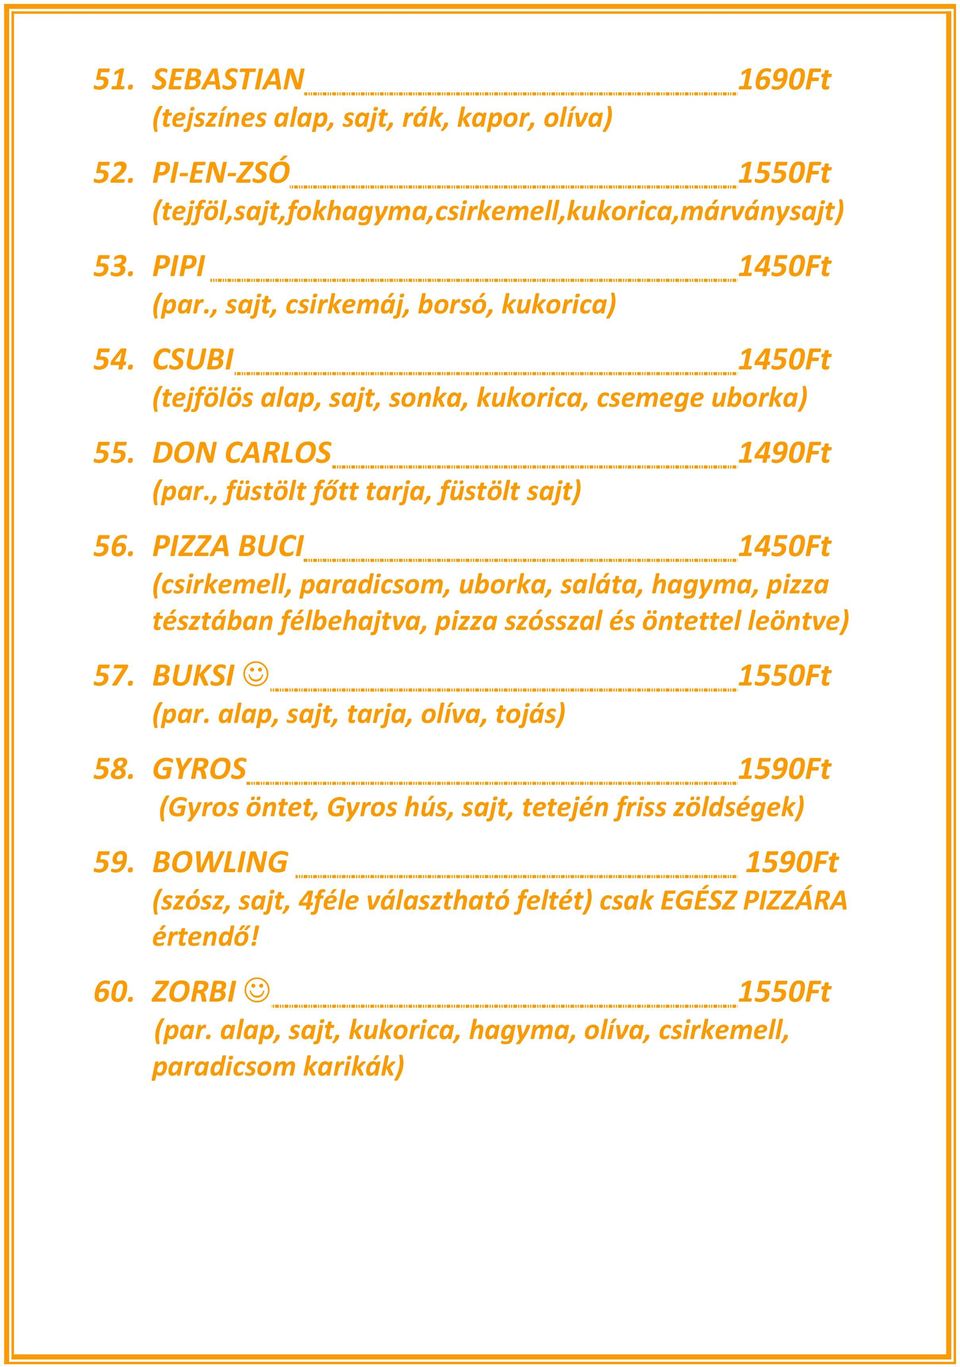 PIZZA BUCI 1450Ft (csirkemell, paradicsom, uborka, saláta, hagyma, pizza tésztában félbehajtva, pizza szósszal és öntettel leöntve) 57. BUKSI 1550Ft (par. alap, sajt, tarja, olíva, tojás) 58.